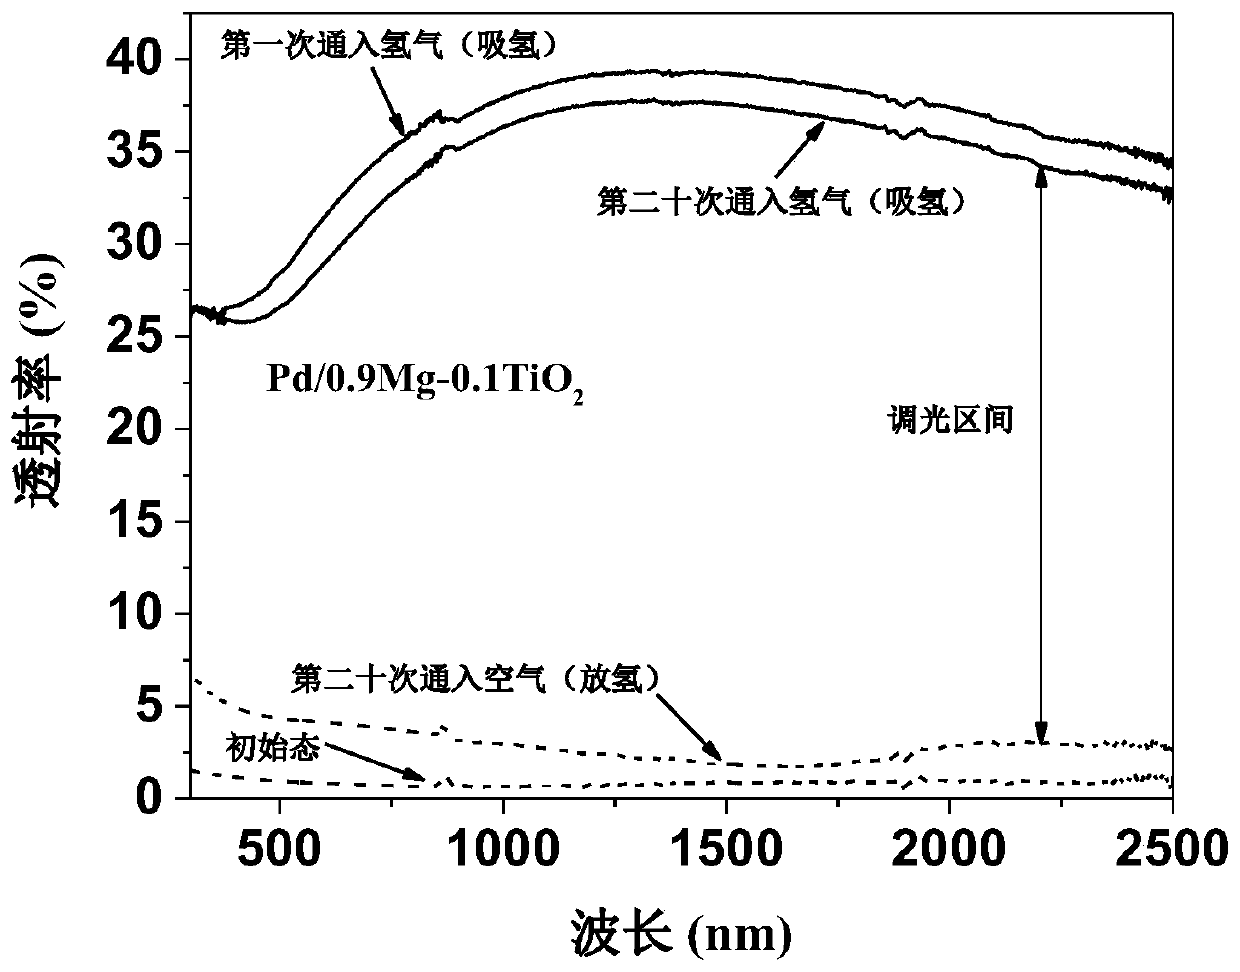 Palladium/magnesium-titanium dioxide gas-induced dimming film and its preparation